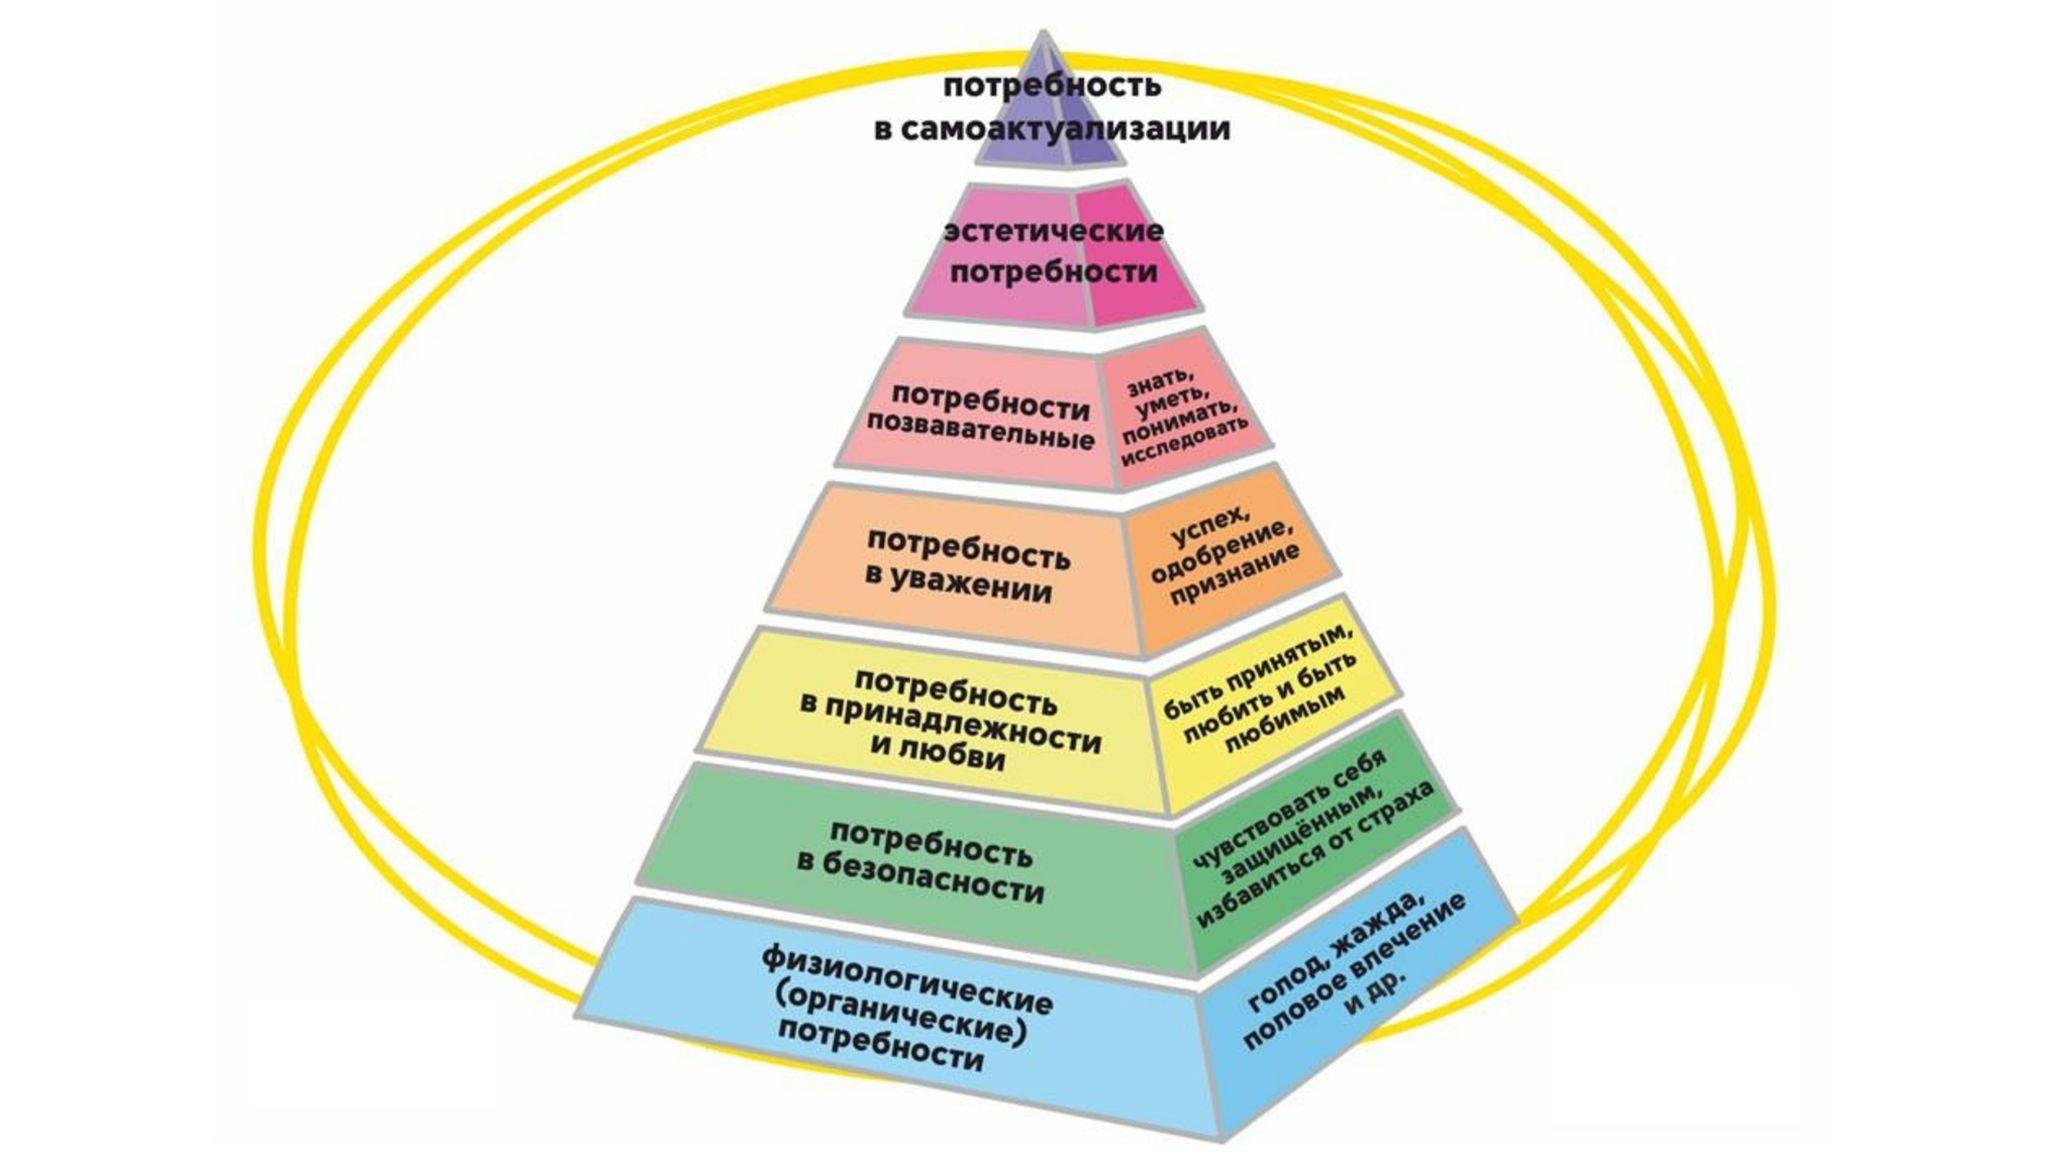 Удовлетворение потребностей все части. Семь уровней пирамиды Маслоу. Пирамида развития личности Маслоу. Базовые потребности человека по пирамиде Маслоу. Пирамида Маслоу 7 уровней безопасности.